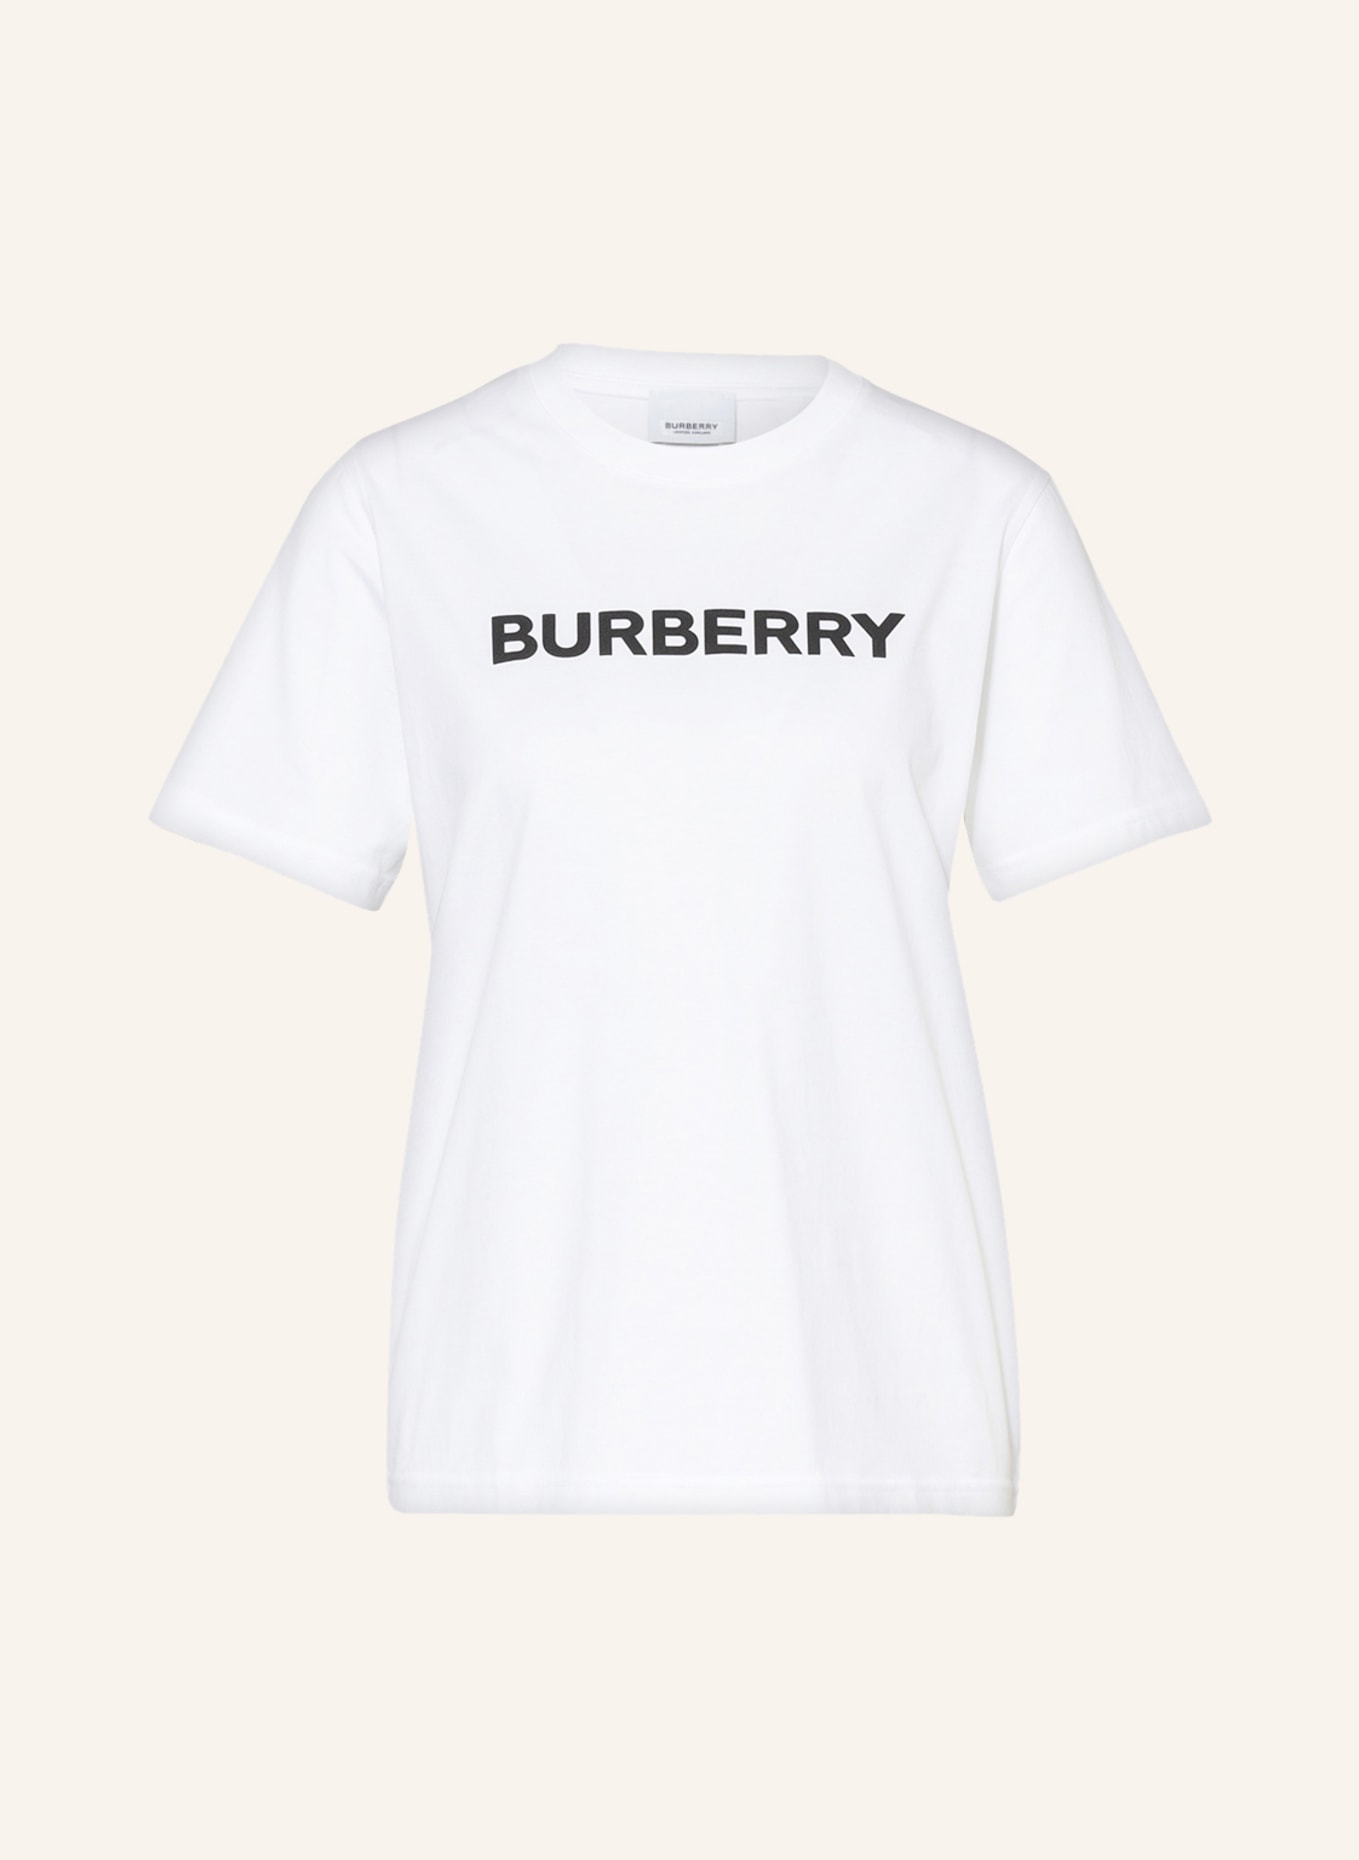 BURBERRY T-Shirt MARGOT , Farbe: WEISS (Bild 1)